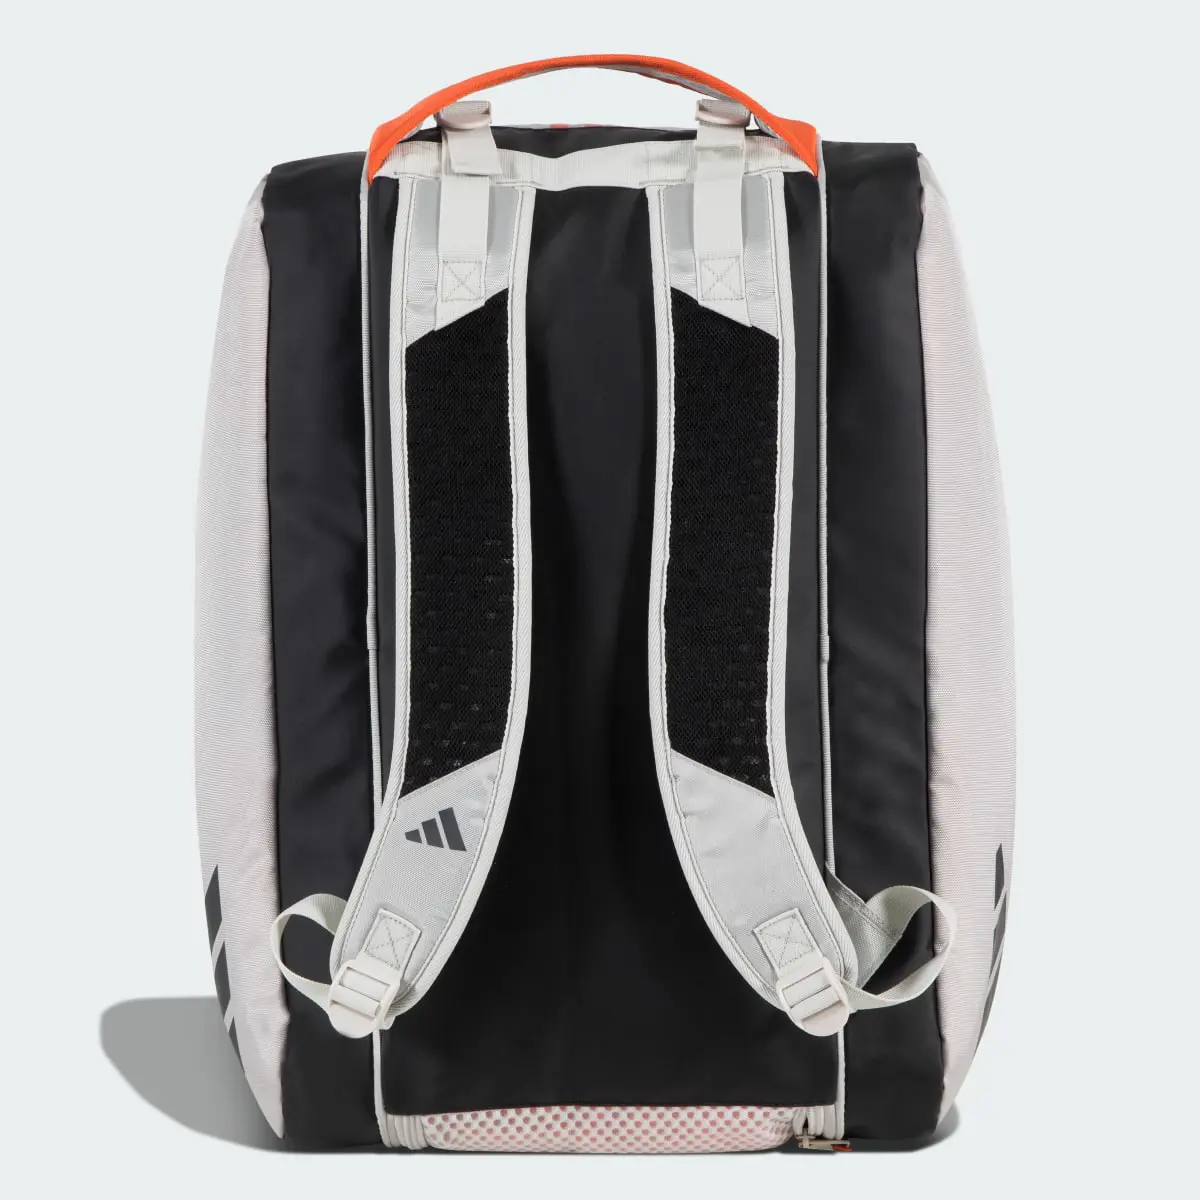 Adidas Racket Bag Multi-Game 3.3 Grey. 2